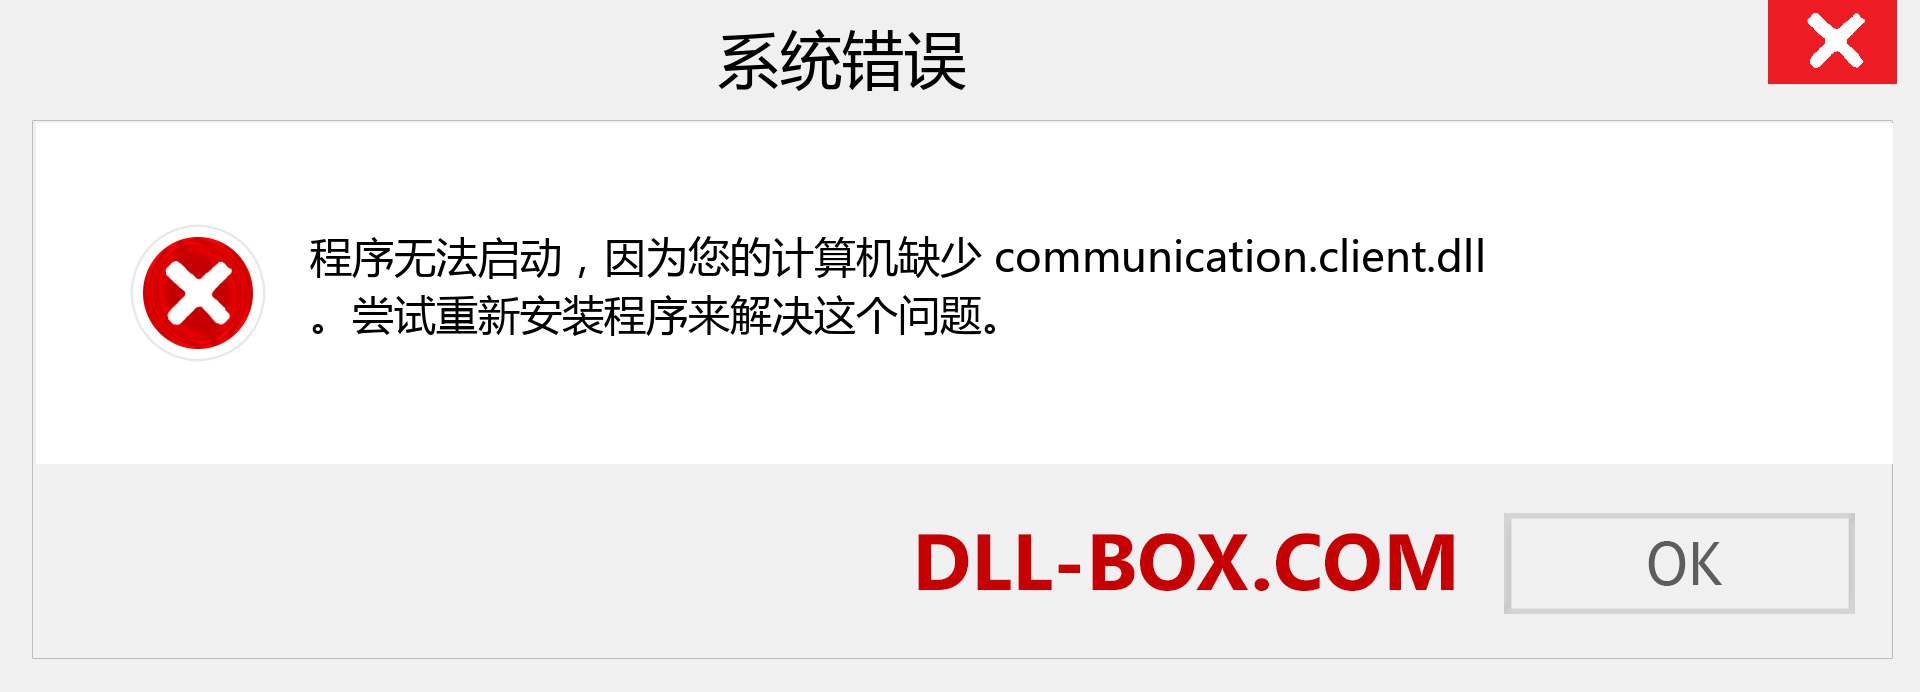 communication.client.dll 文件丢失？。 适用于 Windows 7、8、10 的下载 - 修复 Windows、照片、图像上的 communication.client dll 丢失错误